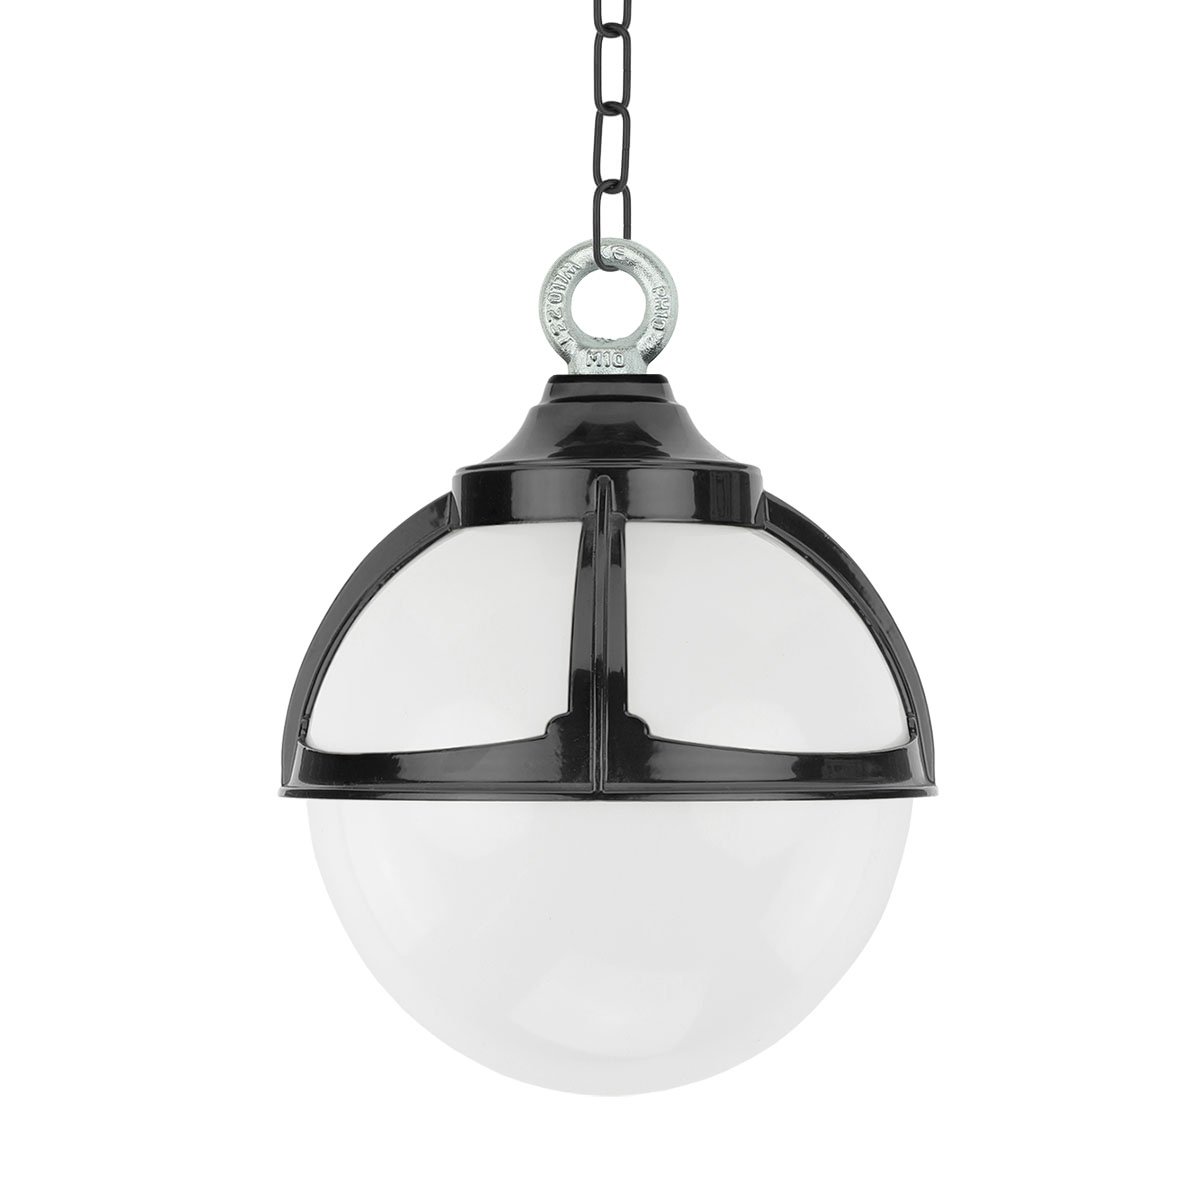 Buitenverlichting Klassiek Landelijk Bol hanglamp Achlum aan ketting - Ø 25 cm